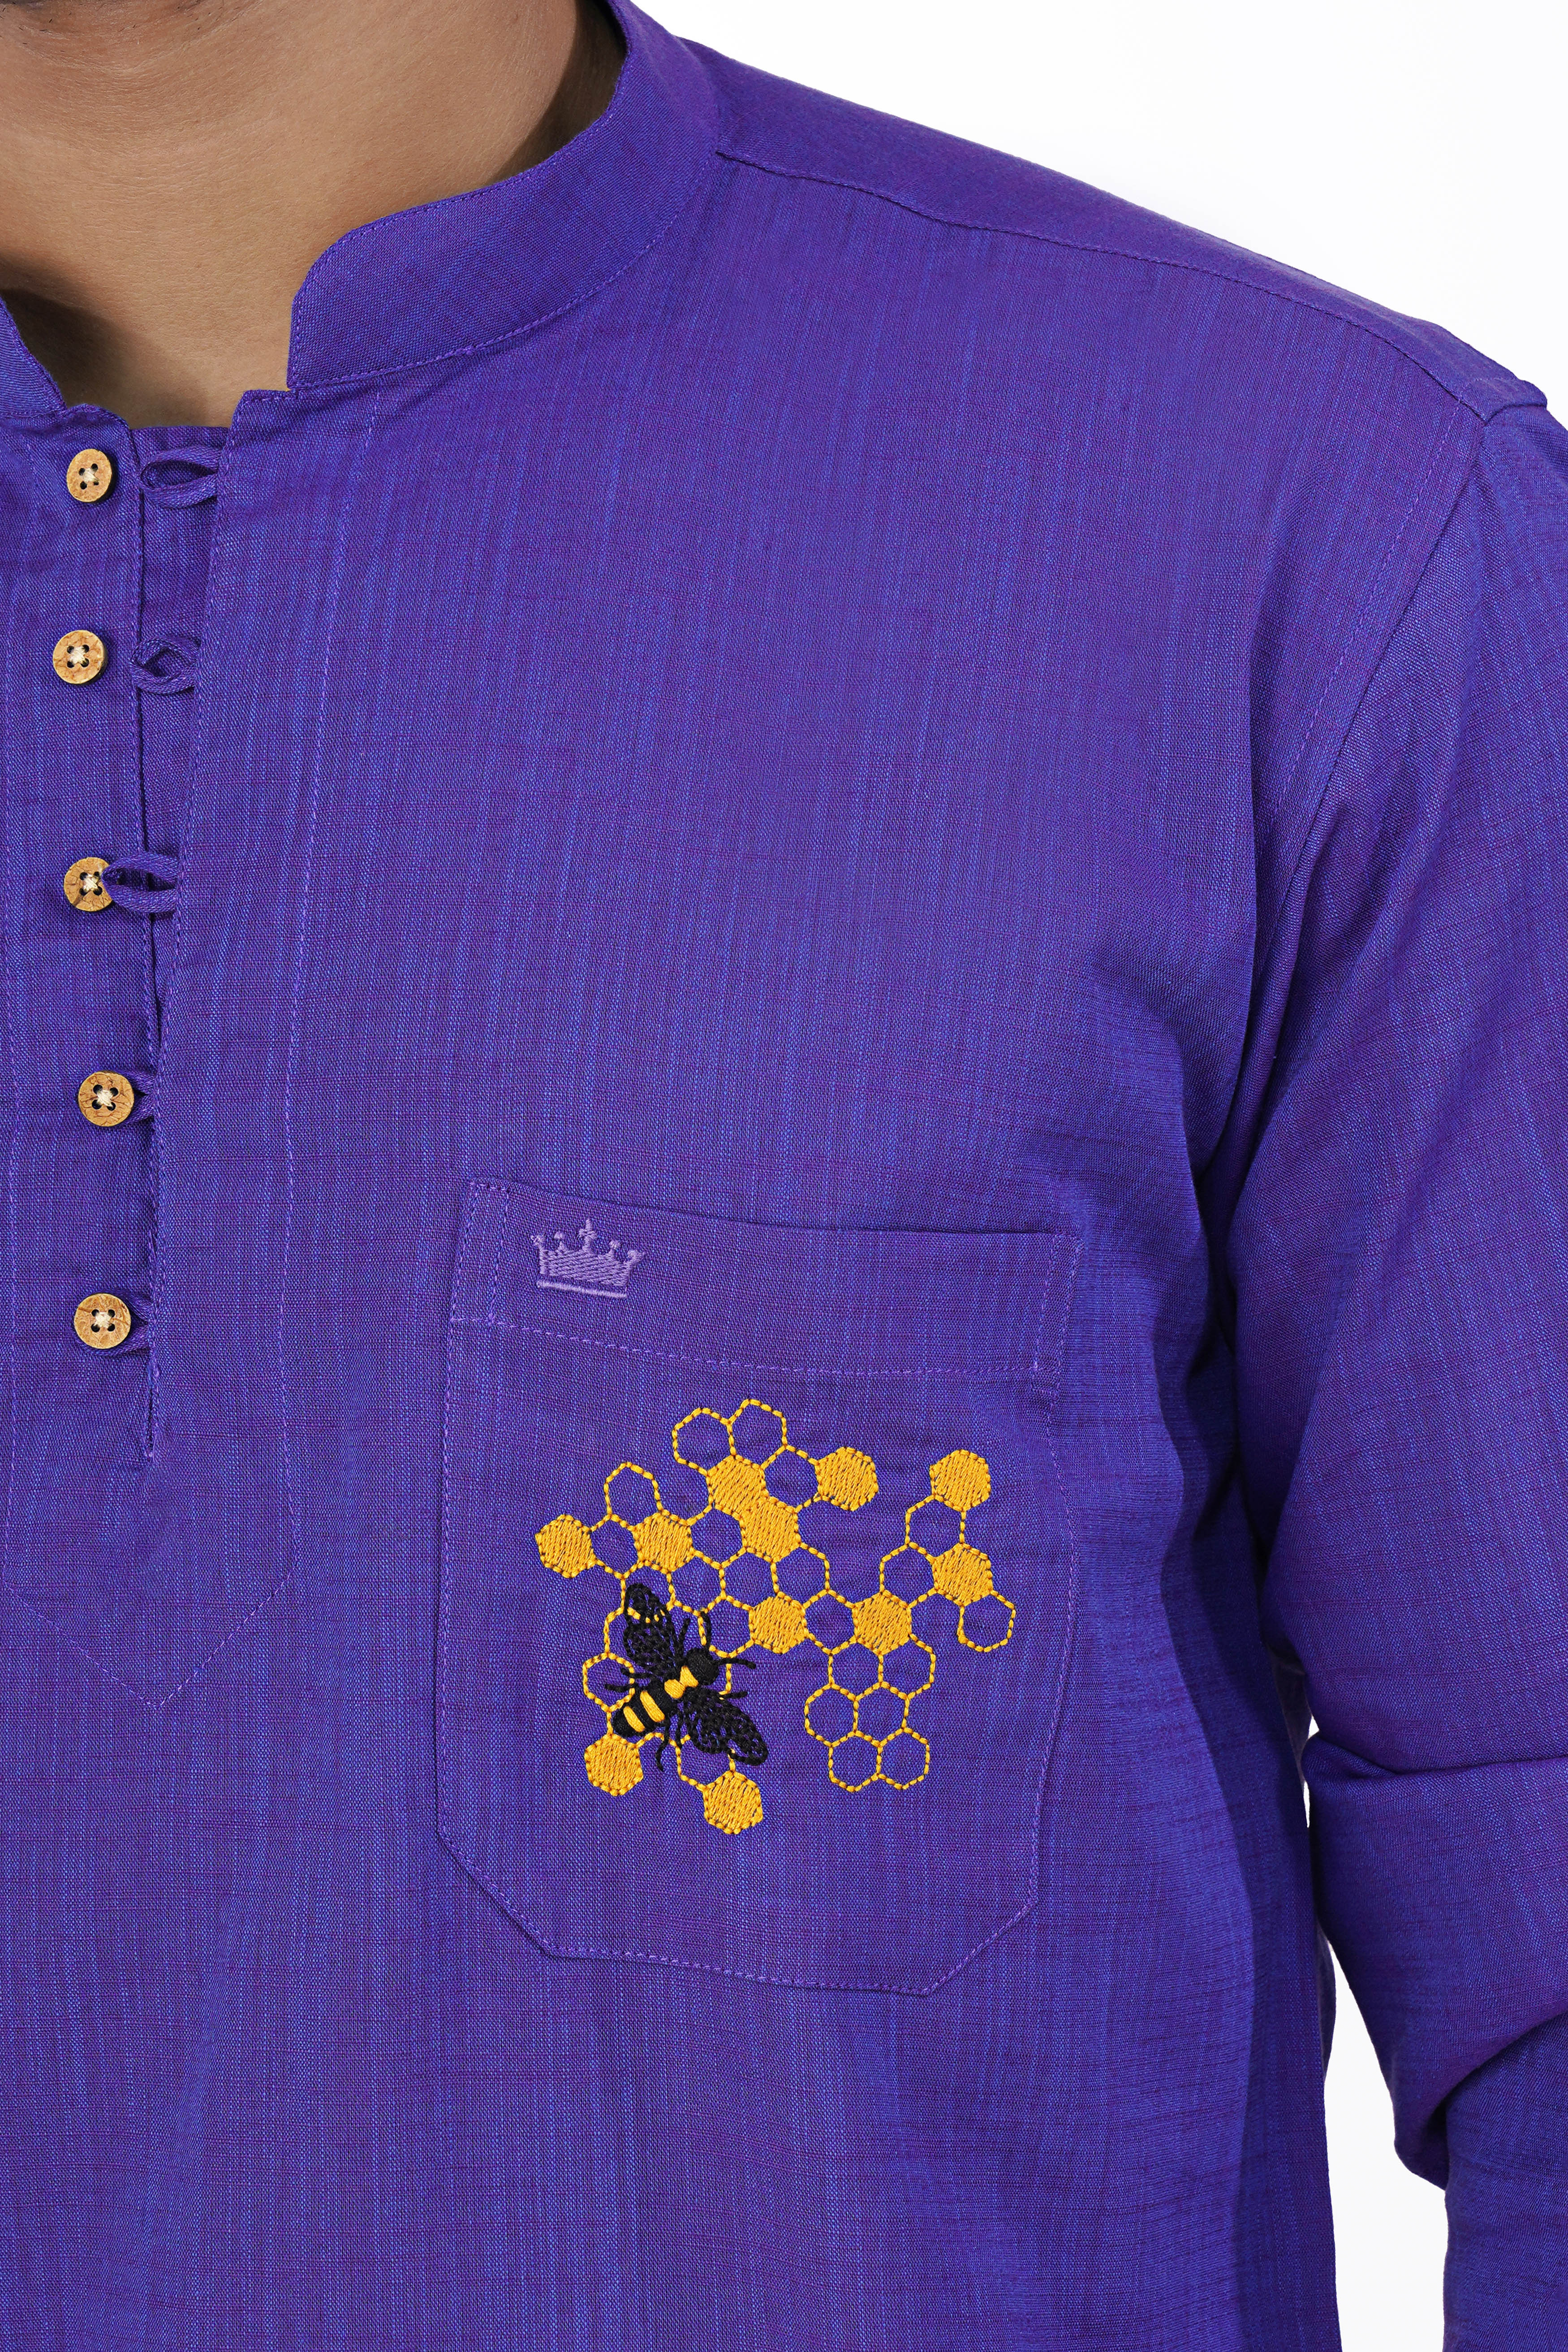 Iris Blue with Eminence Purple Embroidered Chambray Designer Kurta Shirt 6315-KS-E213-38, 6315-KS-E213-H-38, 6315-KS-E213-39, 6315-KS-E213-H-39, 6315-KS-E213-40, 6315-KS-E213-H-40, 6315-KS-E213-42, 6315-KS-E213-H-42, 6315-KS-E213-44, 6315-KS-E213-H-44, 6315-KS-E213-46, 6315-KS-E213-H-46, 6315-KS-E213-48, 6315-KS-E213-H-48, 6315-KS-E213-50, 6315-KS-E213-H-50, 6315-KS-E213-52, 6315-KS-E213-H-52